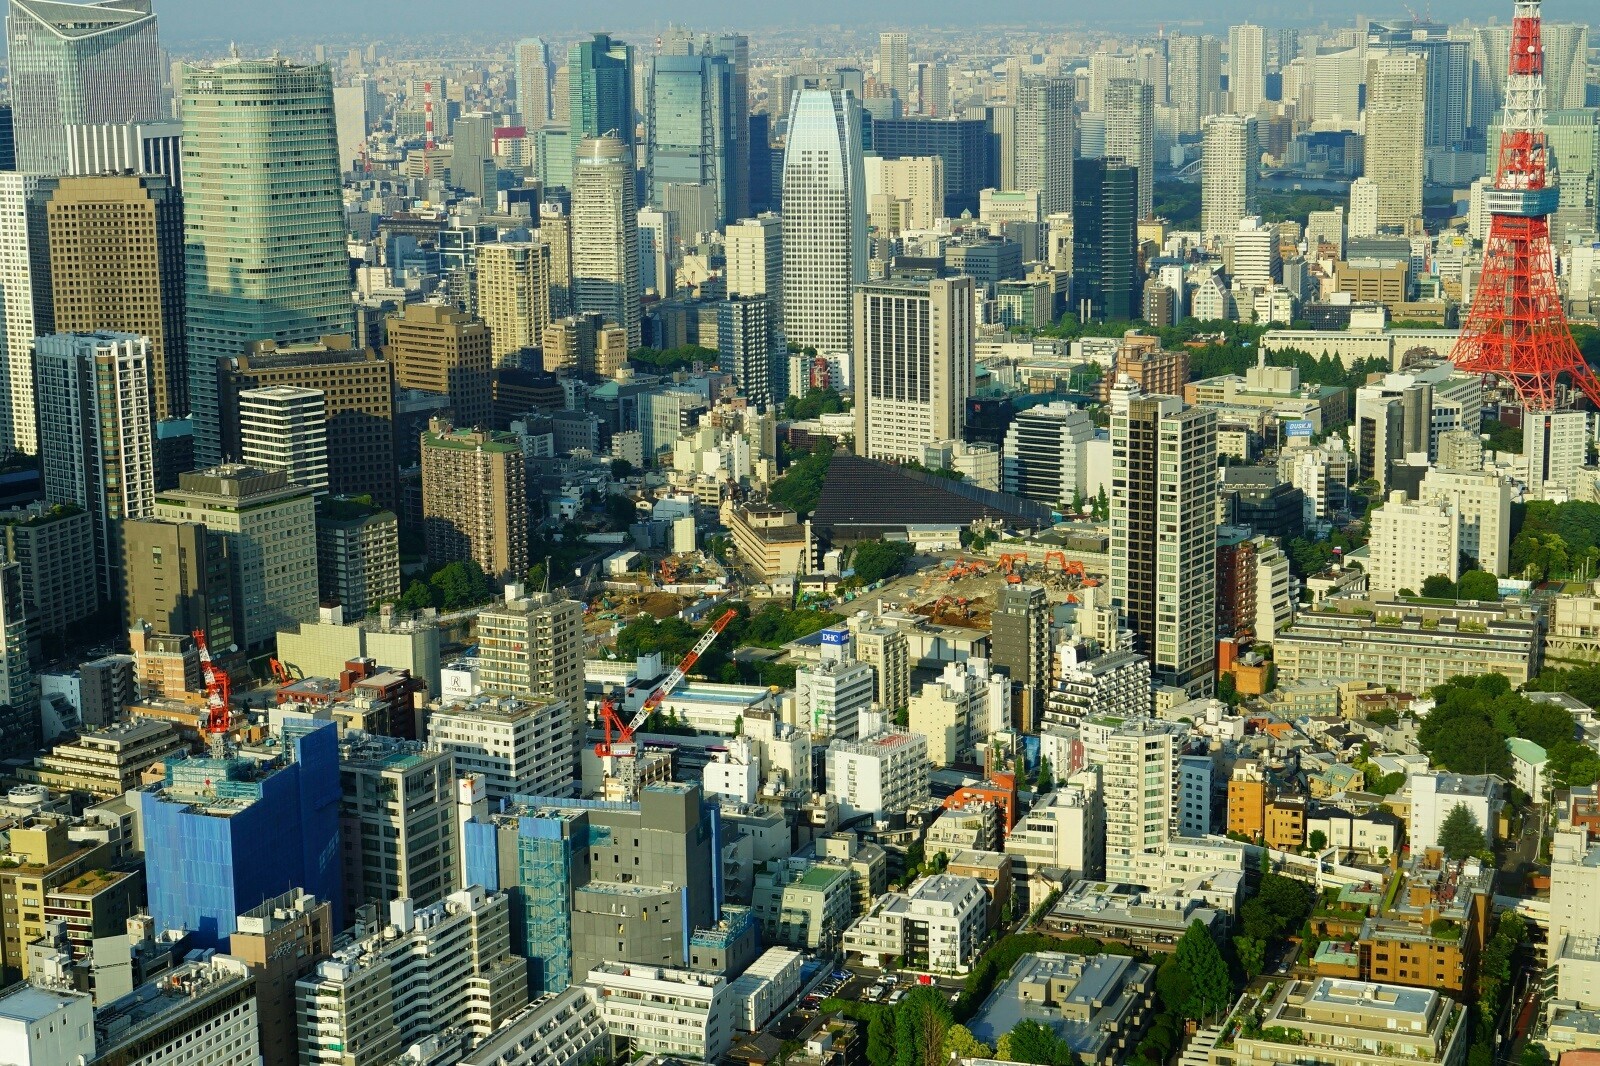 六本木ヒルズ展望台 東京シティビュー スカイデッキ から見た東京都心の超高層ビル群 風景写真